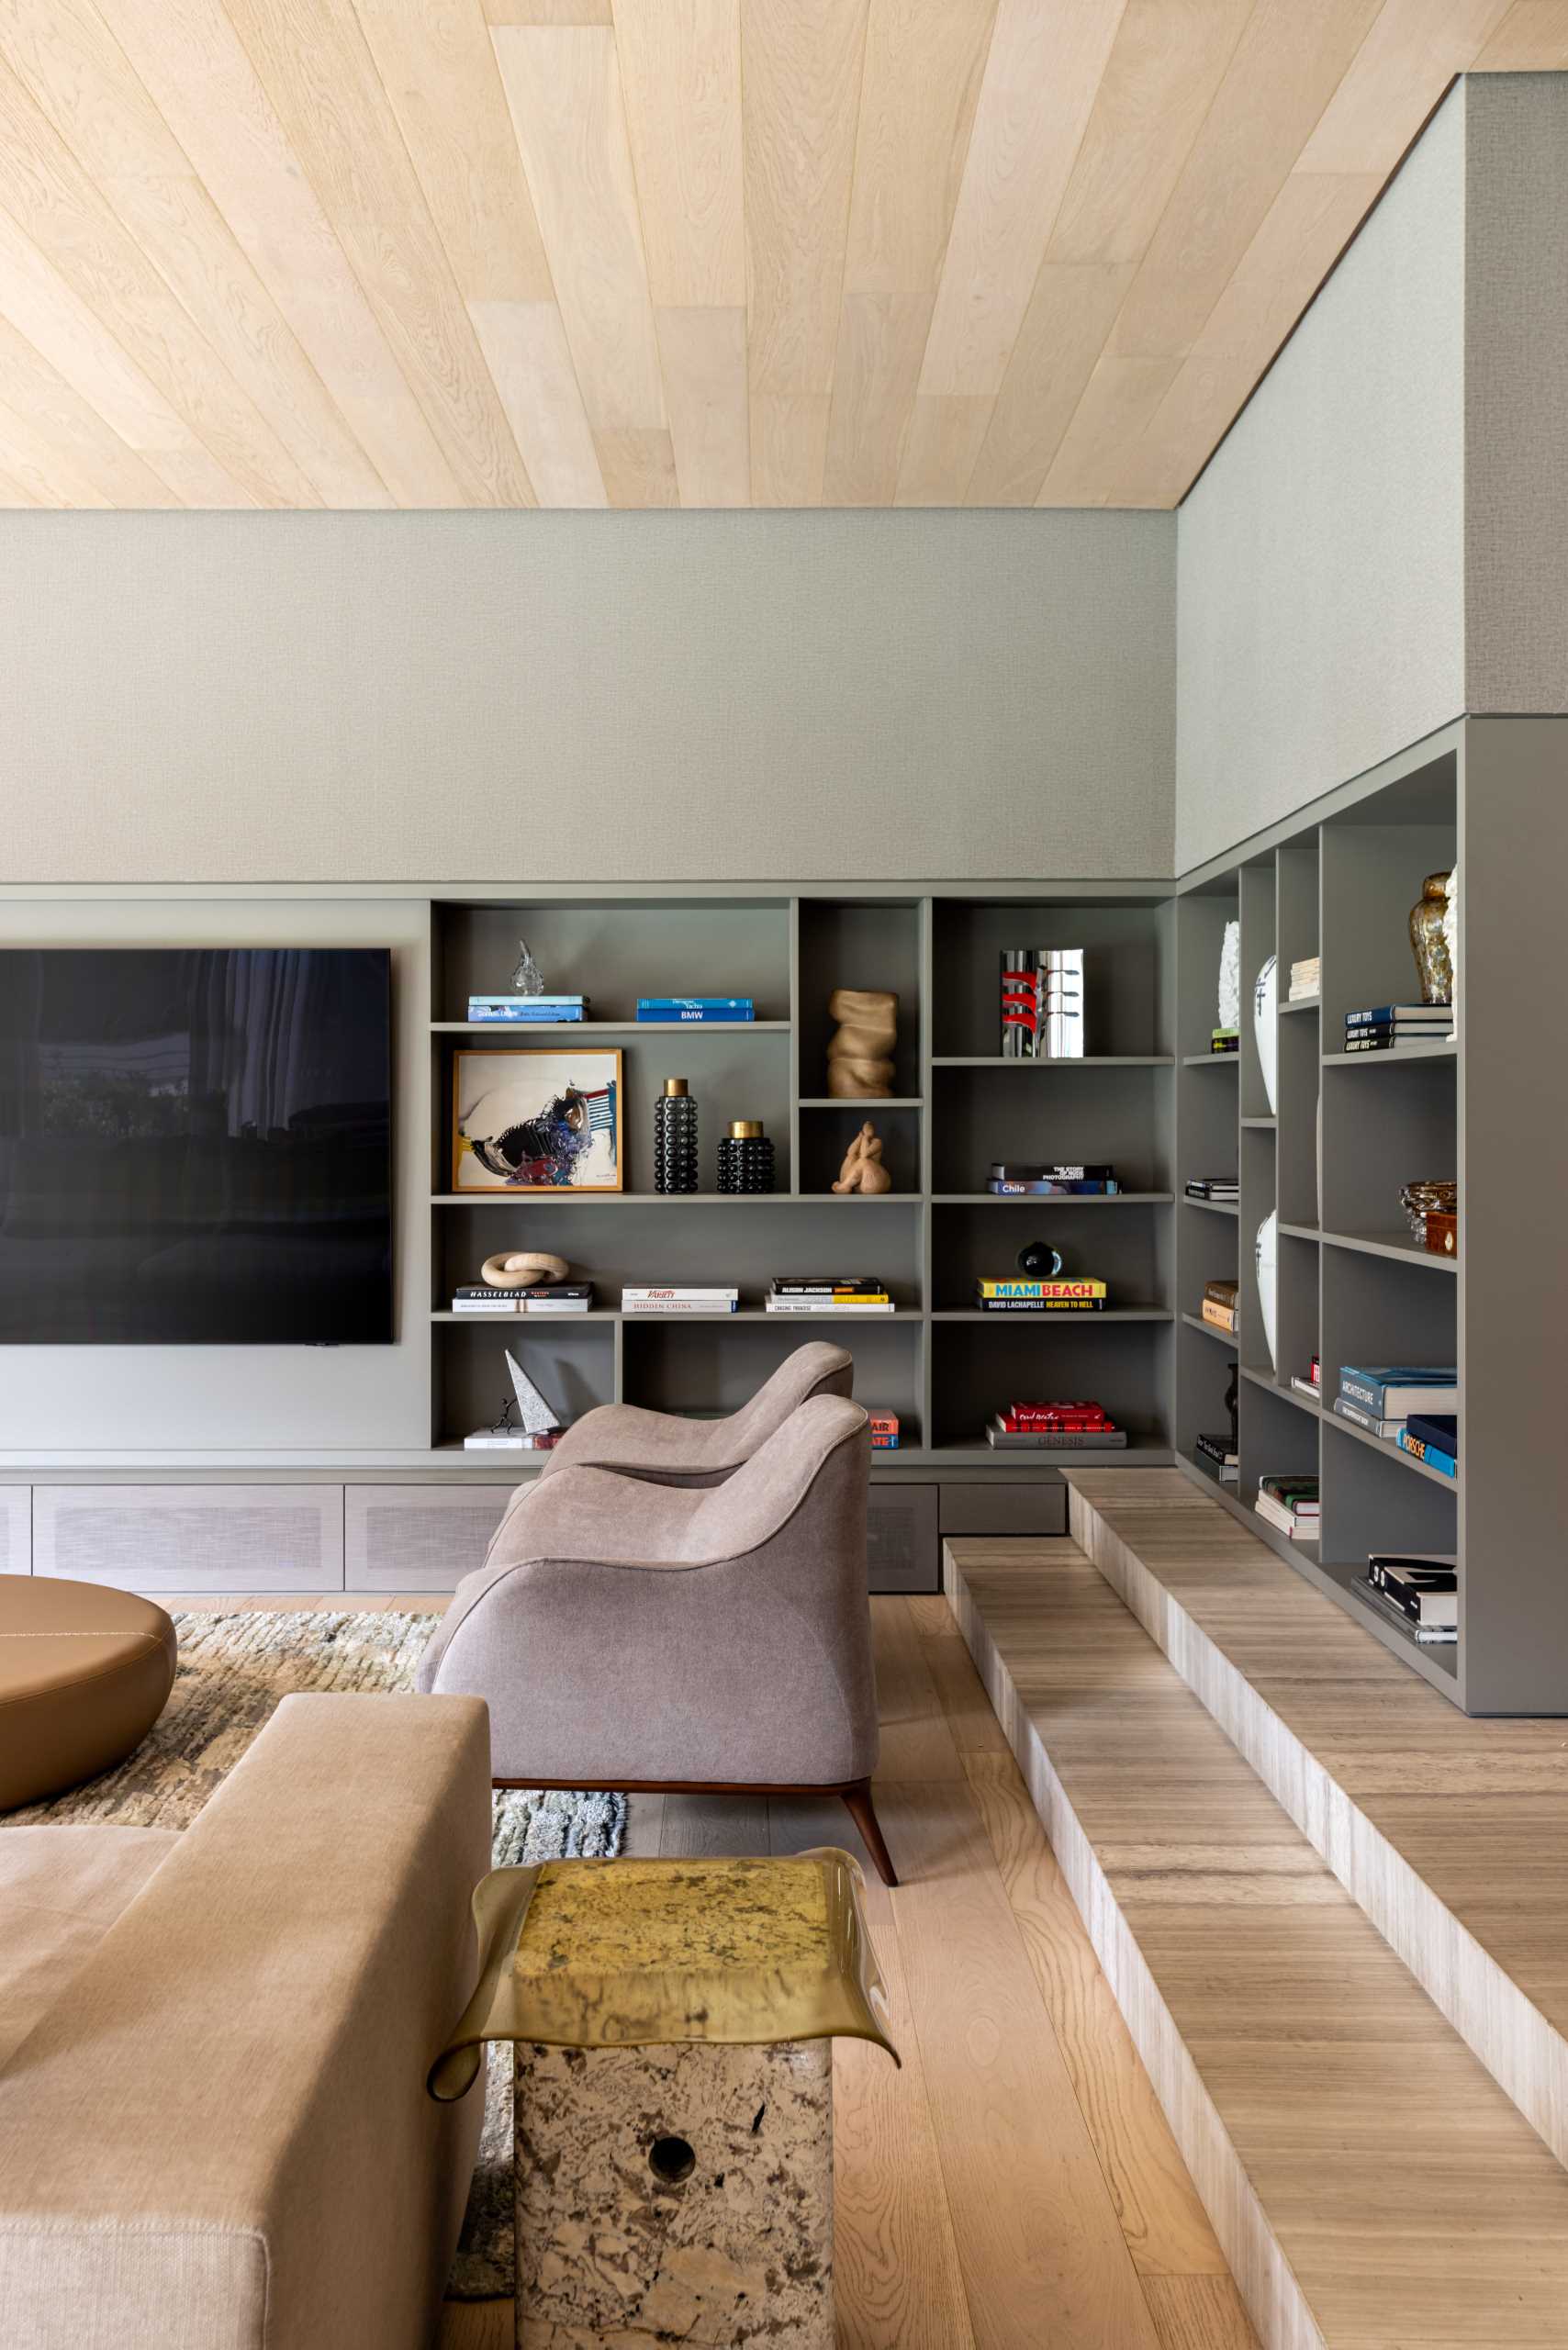 یک اتاق رسانه ای مدرن با قفسه بندی داخلی که شامل نور مخفی است.